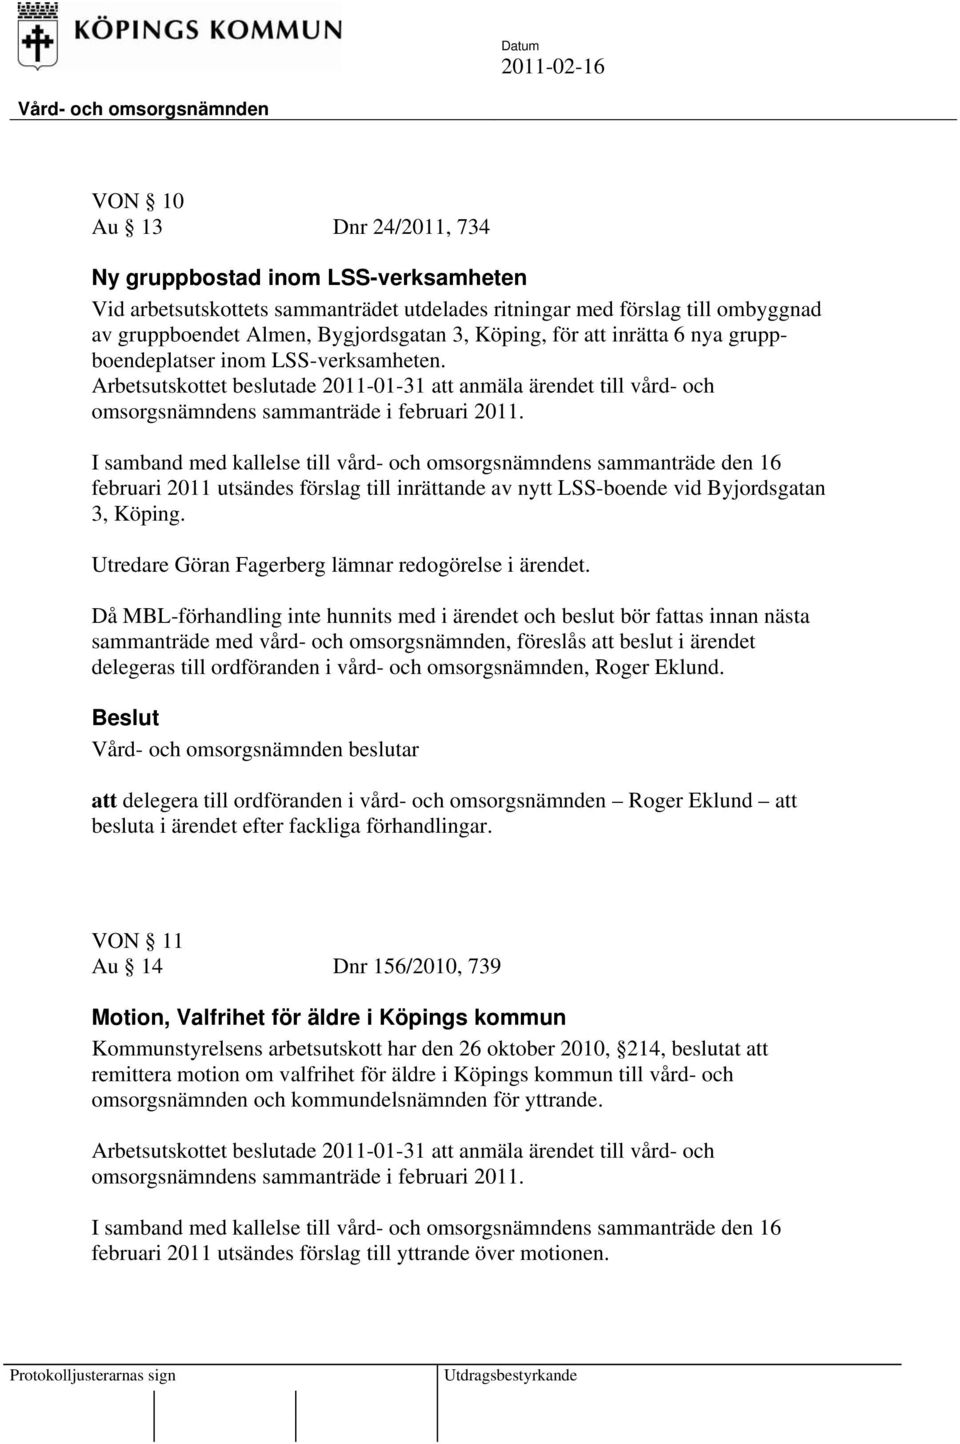 I samband med kallelse till vård- och omsorgsnämndens sammanträde den 16 februari 2011 utsändes förslag till inrättande av nytt LSS-boende vid Byjordsgatan 3, Köping.